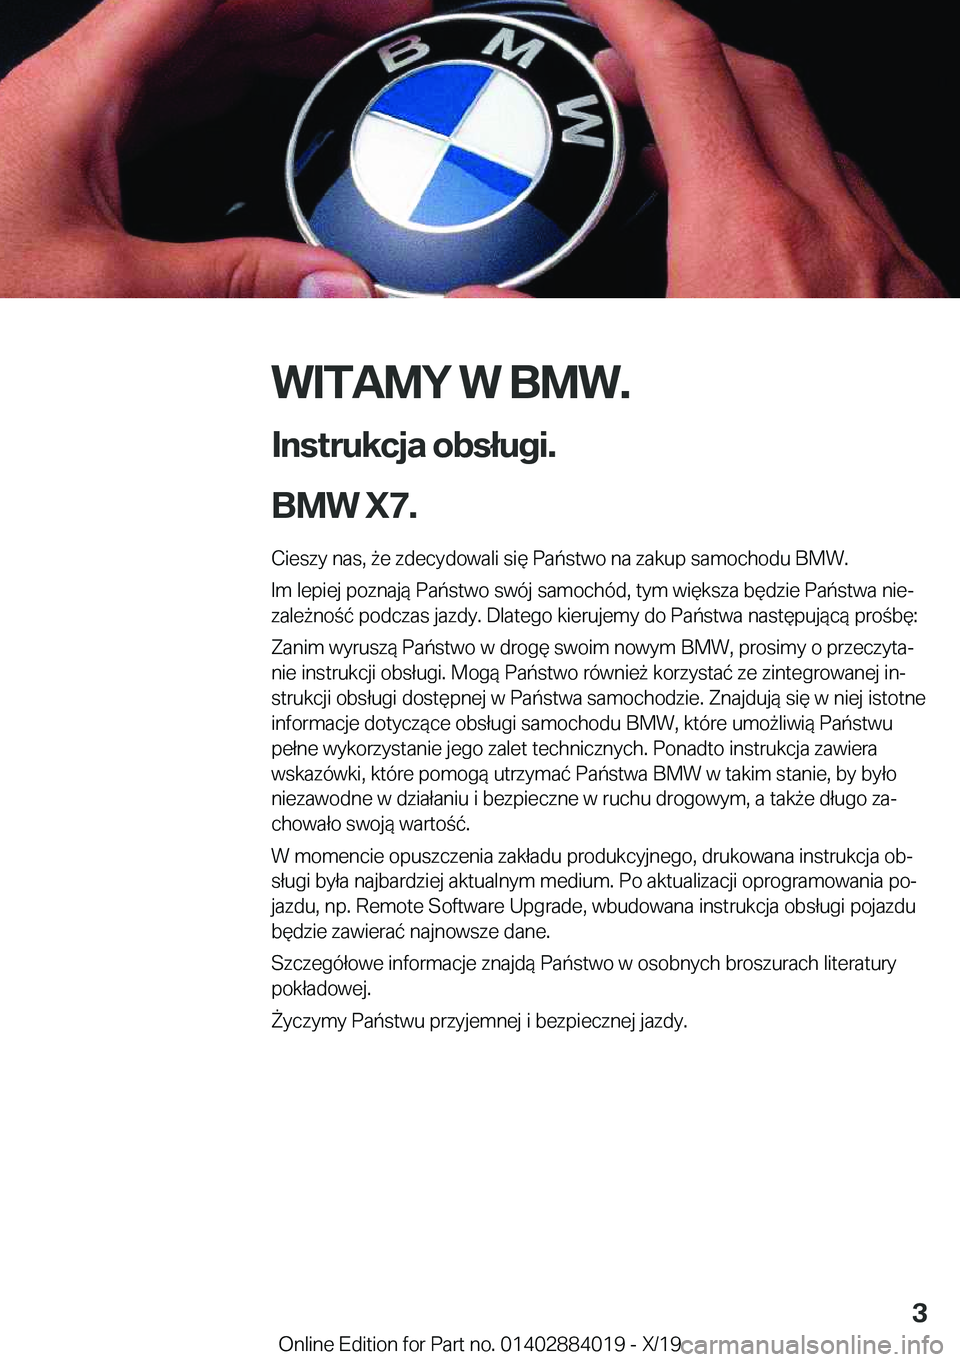 BMW X7 2020  Instrukcja obsługi (in Polish) �W�I�T�A�M�Y��W��B�M�W�.
�I�n�s�t�r�u�k�c�j�a��o�b�s�ł�u�g�i�.
�B�M�W��X�7�. �C�i�e�s�z�y��n�a�s�,�9�e��z�d�e�c�y�d�o�w�a�l�i��s�i�